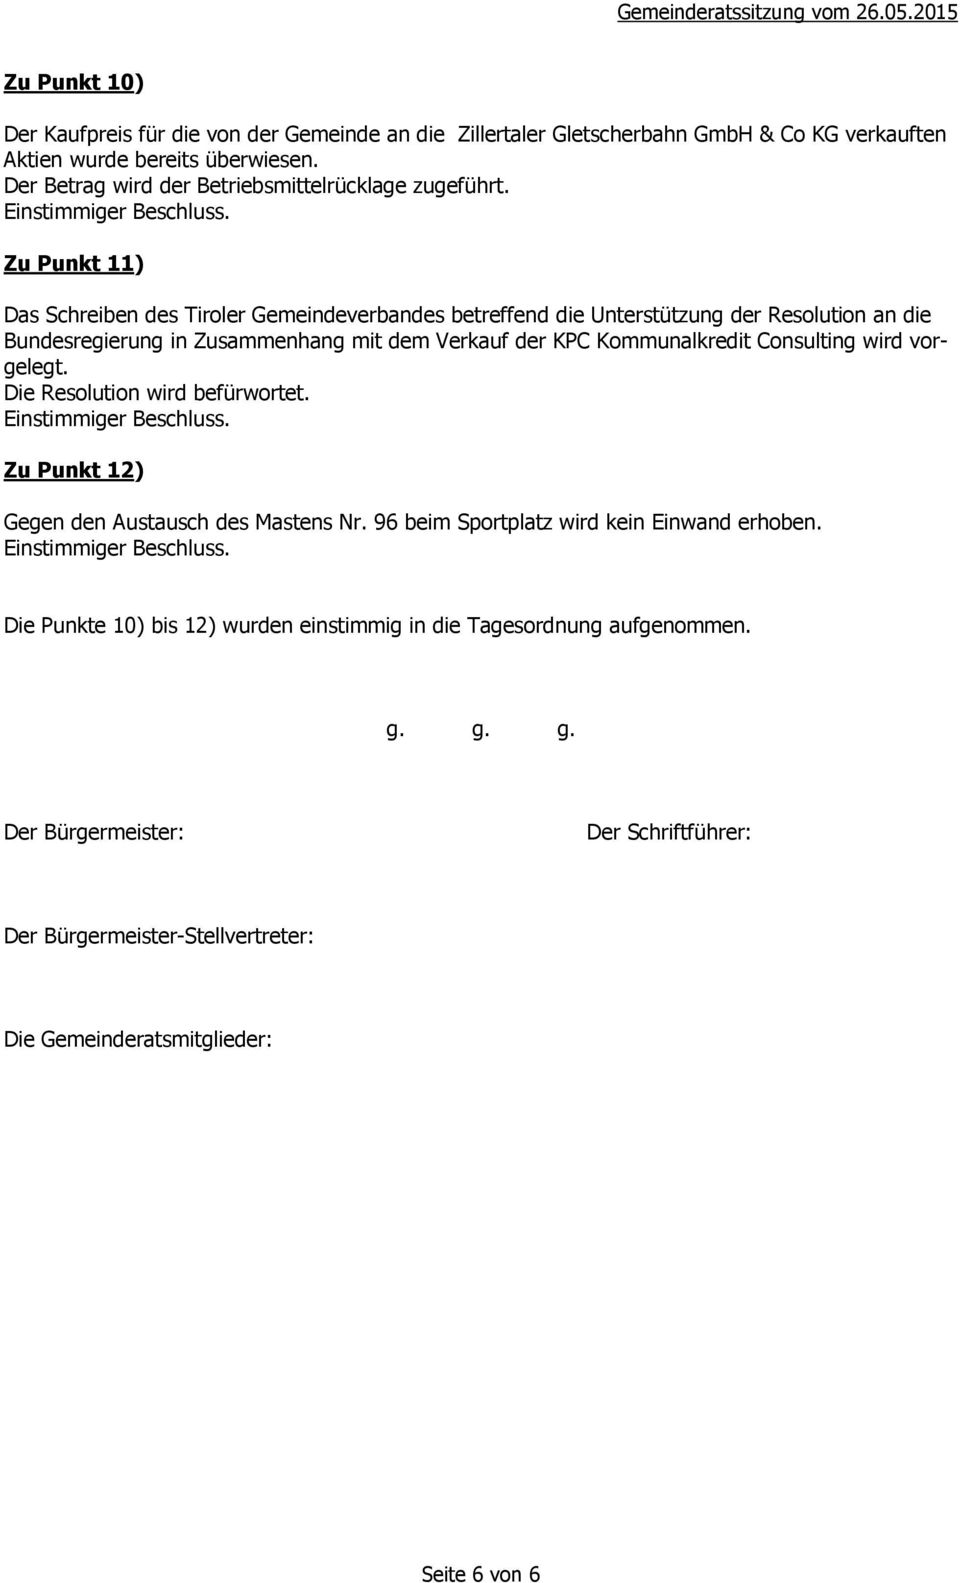 Zu Punkt 11) Das Schreiben des Tiroler Gemeindeverbandes betreffend die Unterstützung der Resolution an die Bundesregierung in Zusammenhang mit dem Verkauf der KPC Kommunalkredit Consulting wird